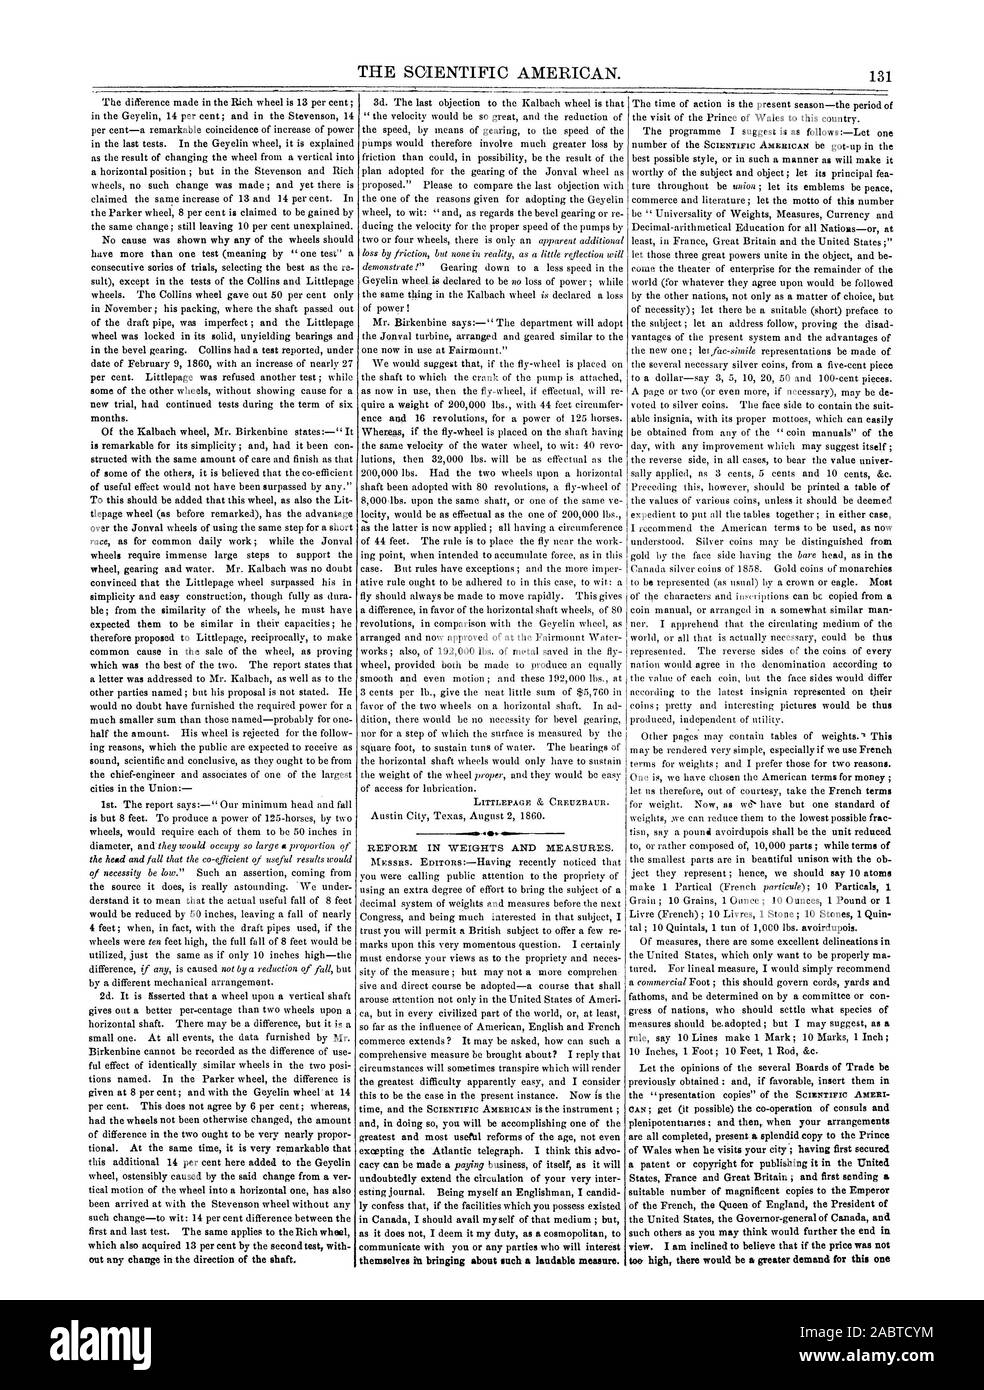 Il Scientific American. 131 RIFORMA IN PESI E MISURE. se stessi per portare a compimento una tale misura lodevole., 1860-08-25 Foto Stock